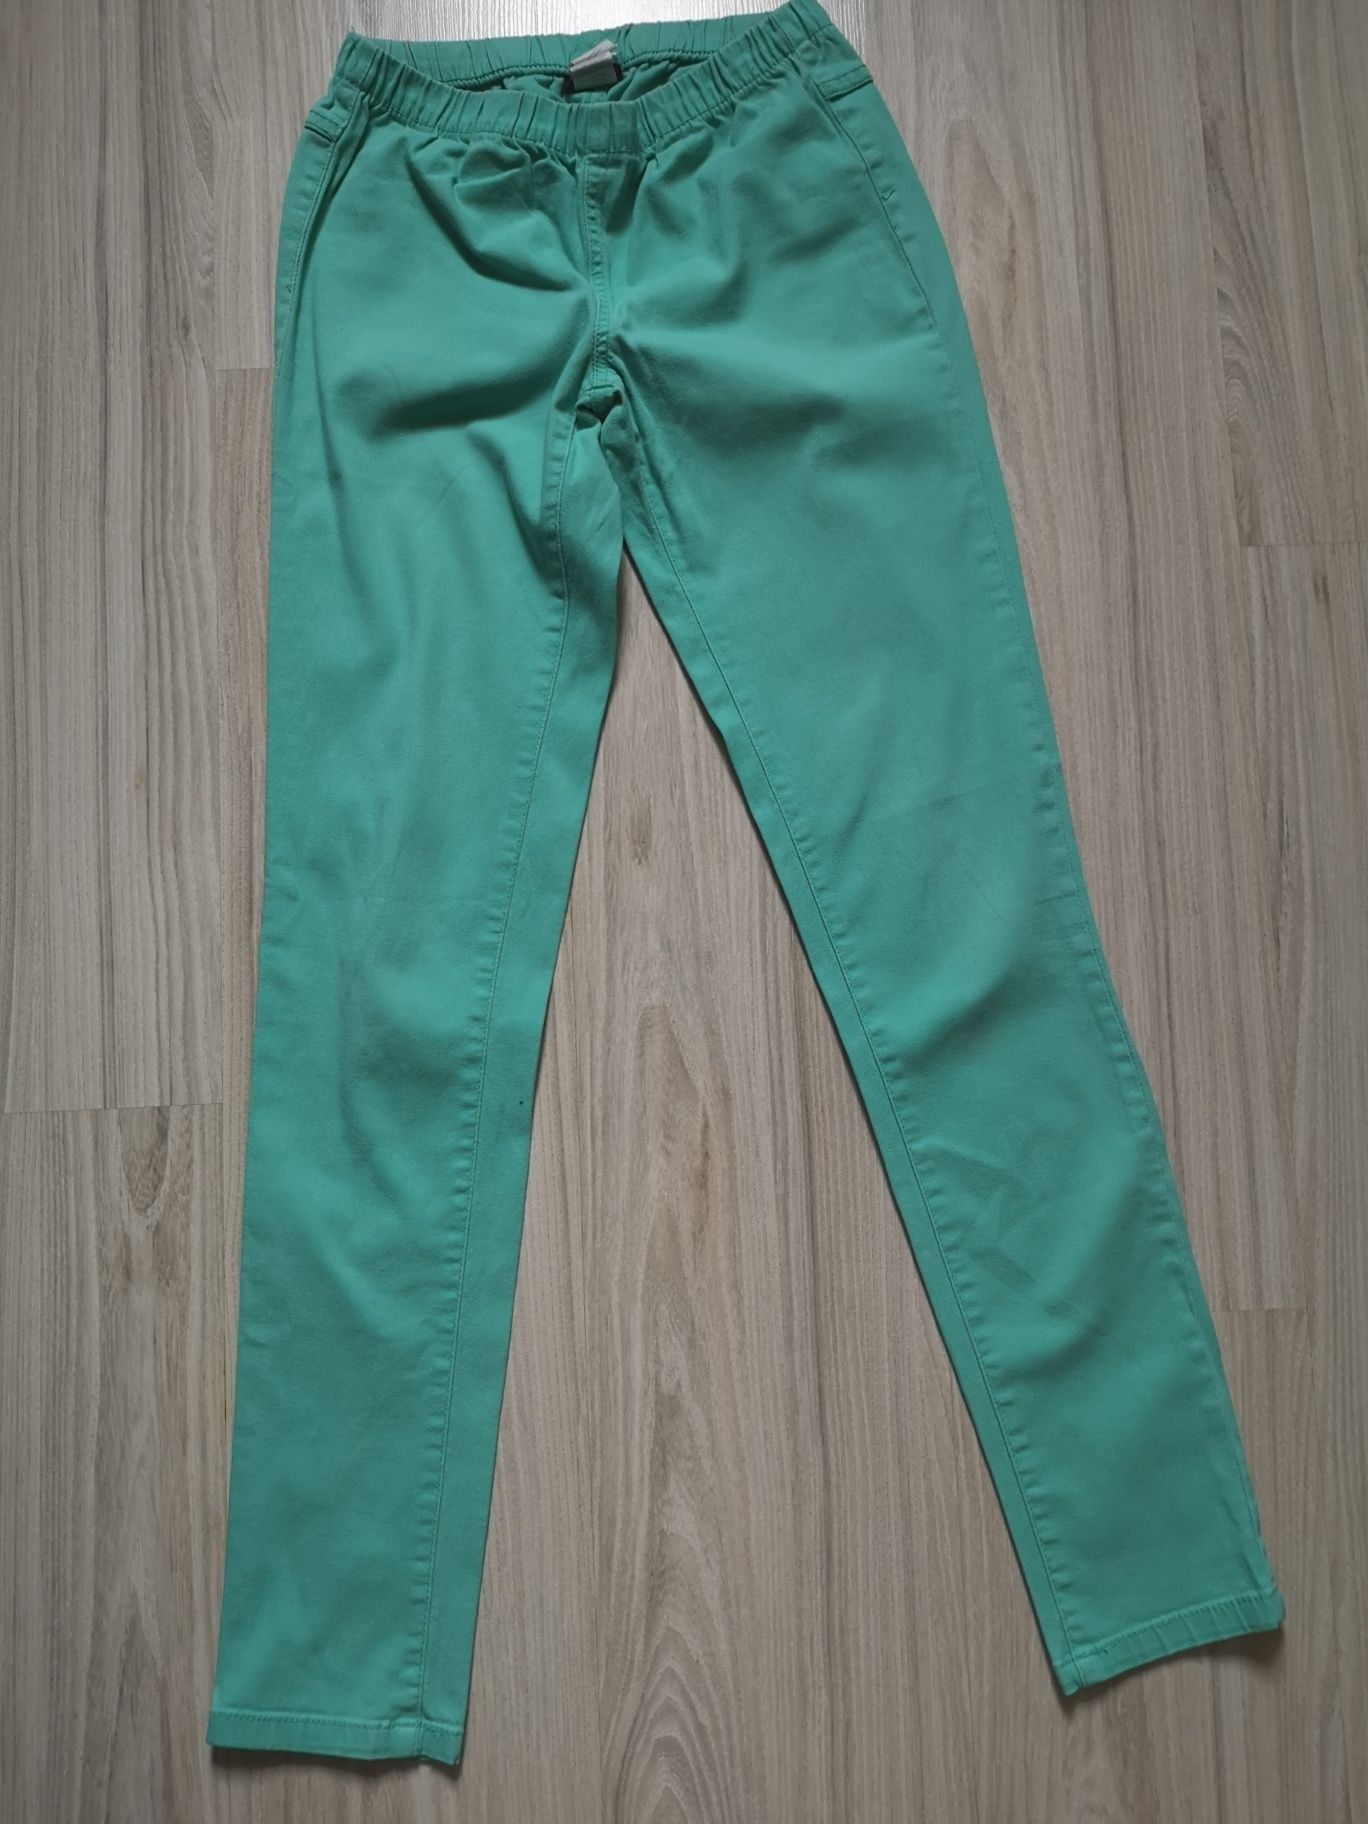 Miętowe zielone damskie spodnie na gumce rozmiar S / M